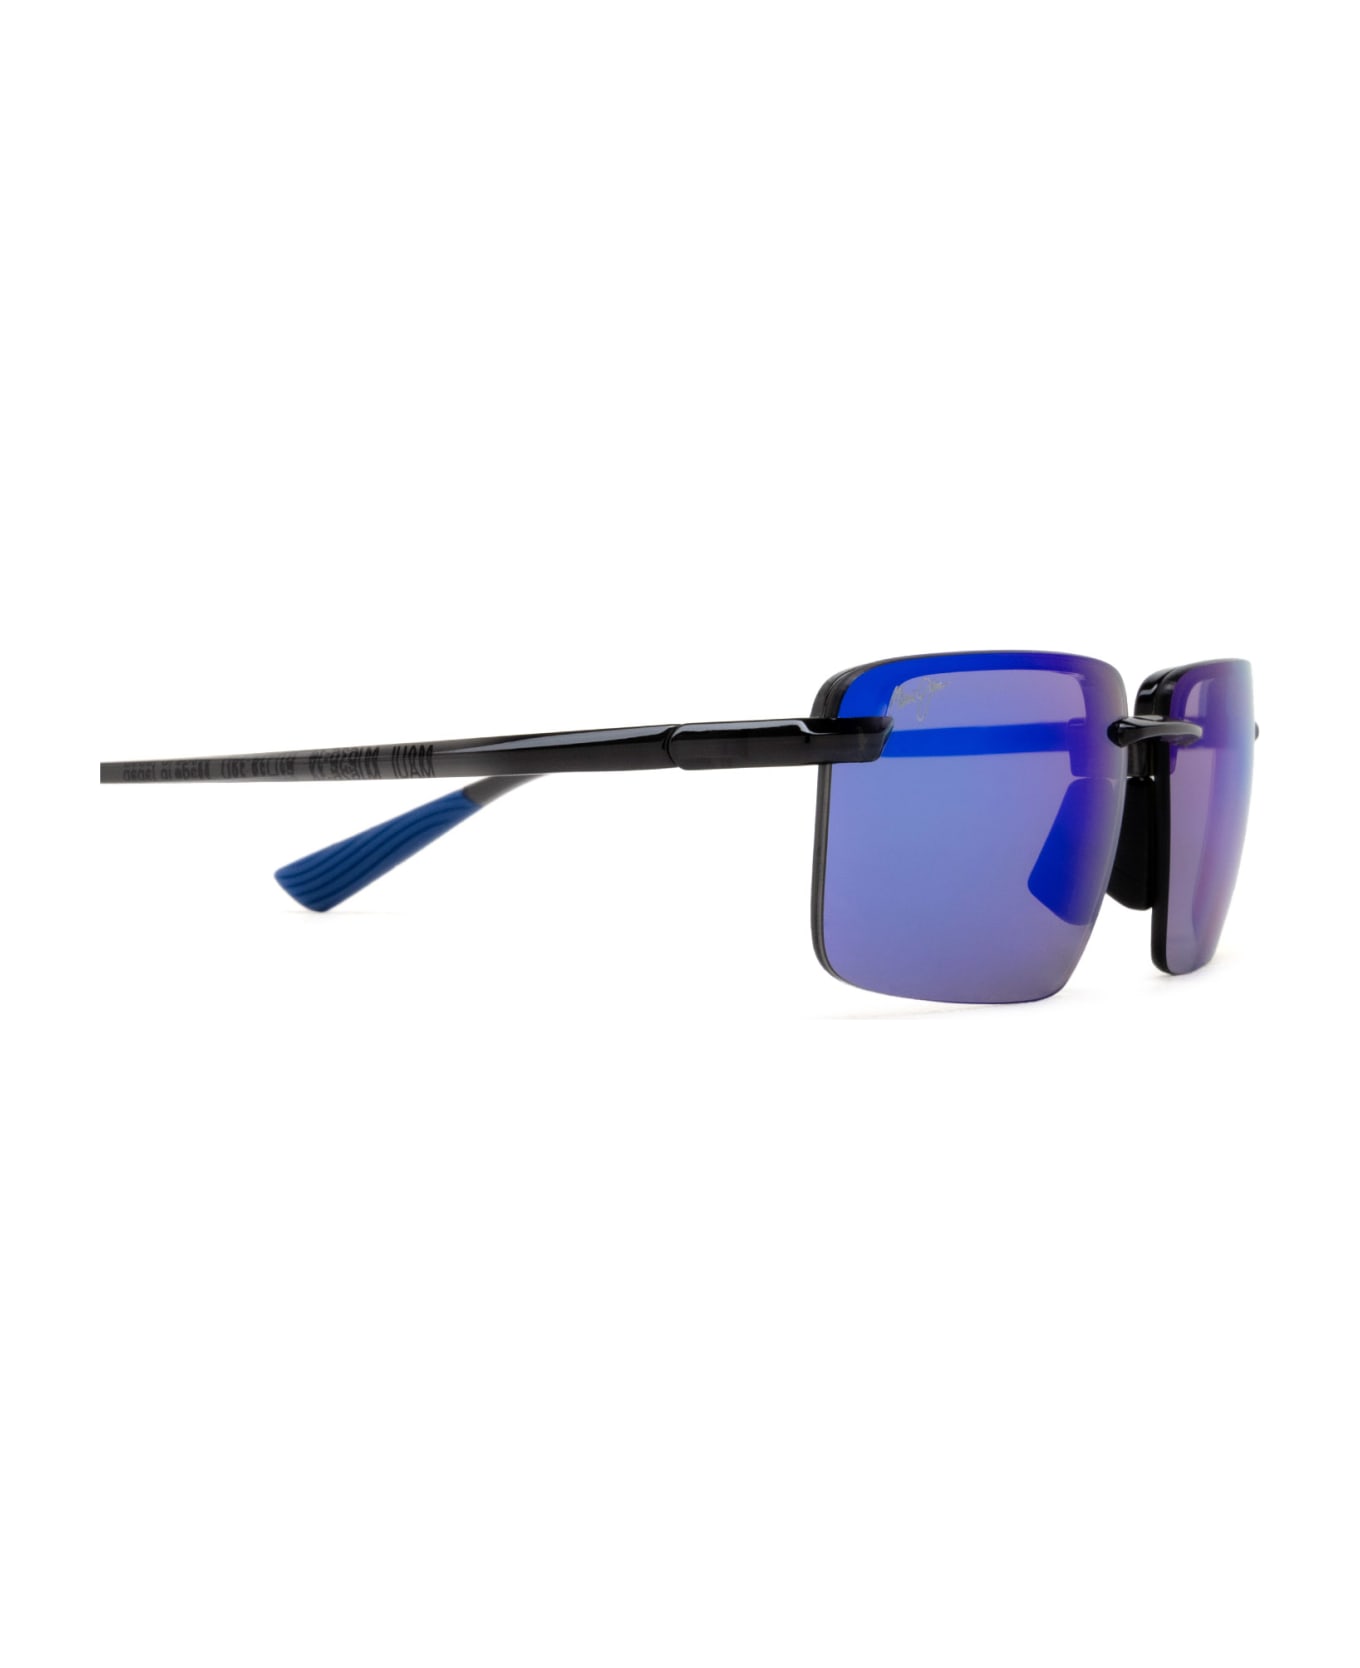 Maui Jim Mj626 Shiny Transparent Dark Grey Sunglasses - Shiny Transparent Dark Grey